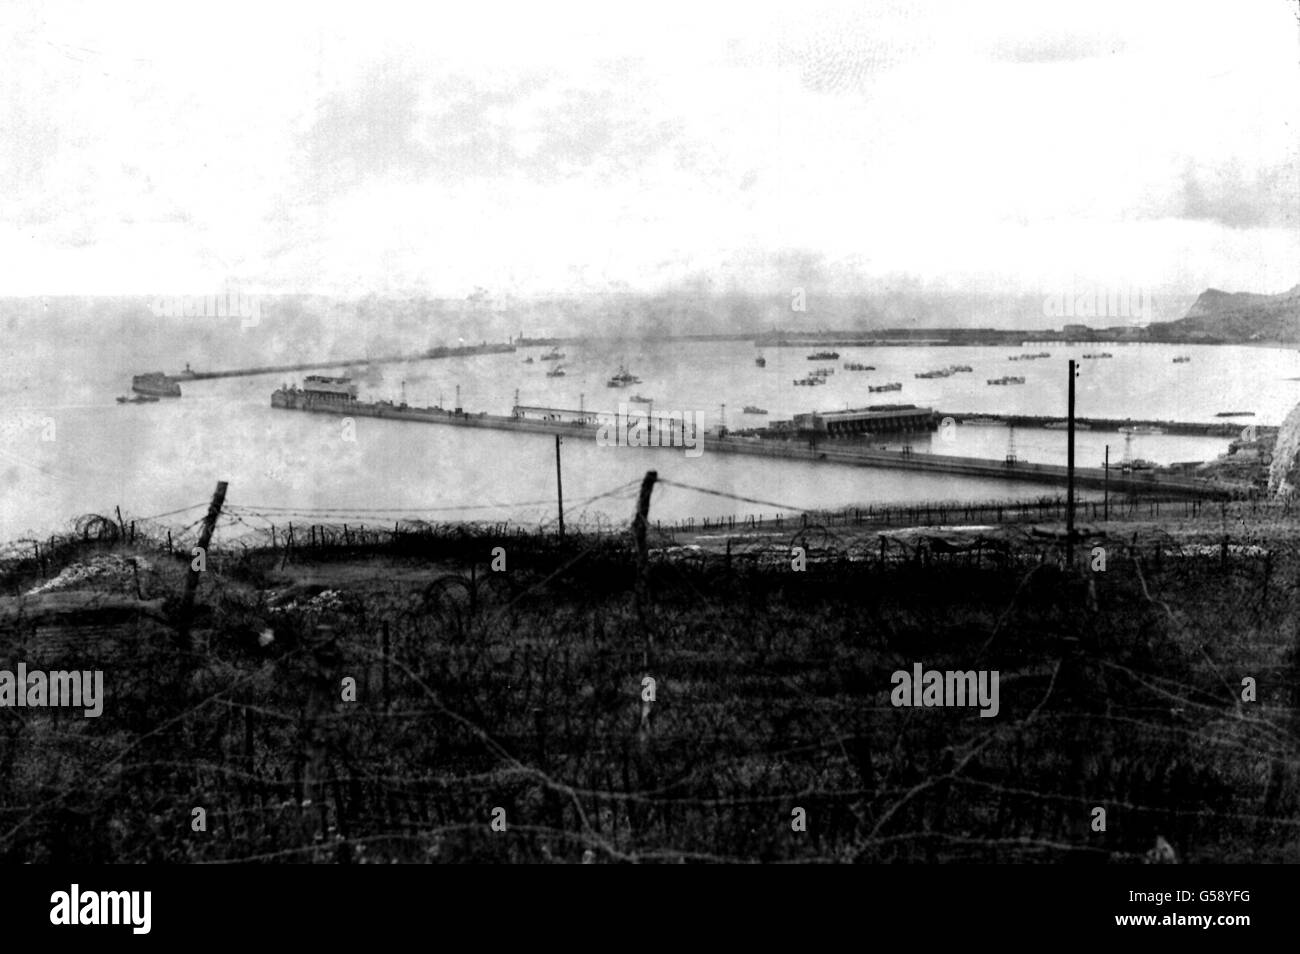 1944: Rauch driftet über Dover Harbour, Kent. Im Vordergrund sind Bänder aus Stacheldraht, die als Teil der britischen Küstenverteidigung verwendet werden. Sowohl Marineschiffe als auch zivile Schiffe sind zu sehen. Bild Teil der PA Zweiten Weltkrieg Sammlung. Stockfoto